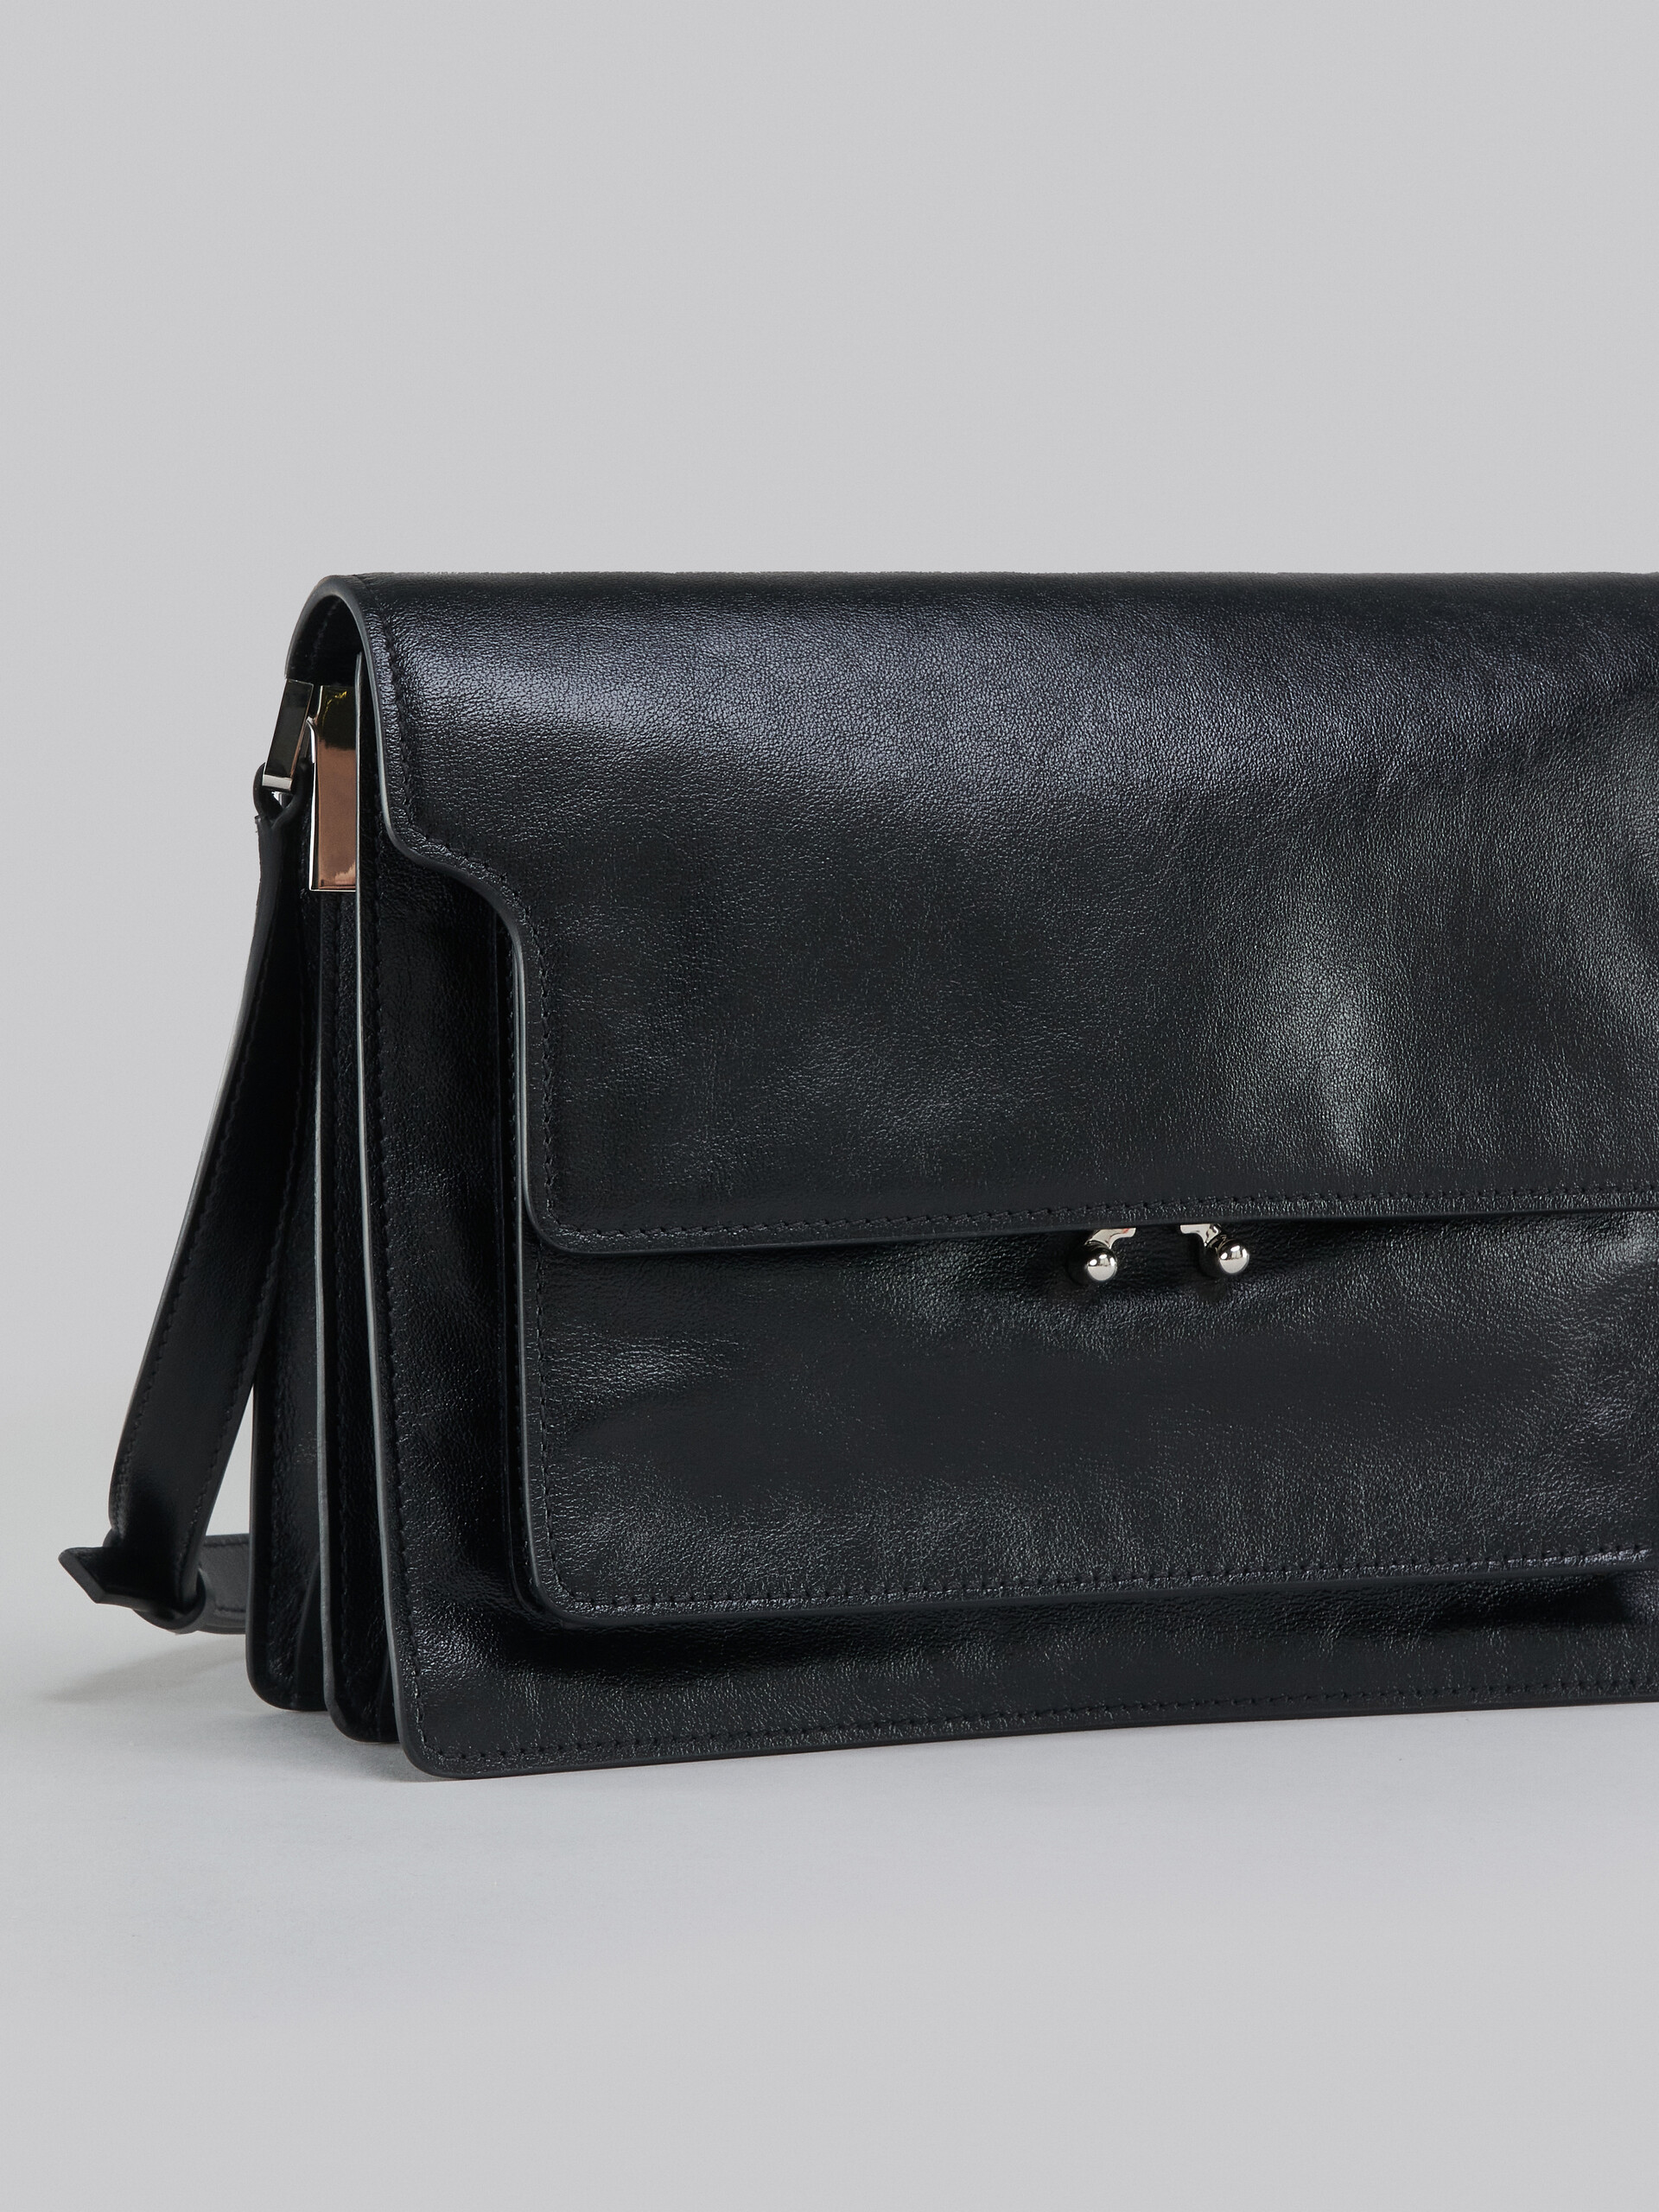 Trunk Soft Large Bag in black leather - Shoulder Bag - Image 5